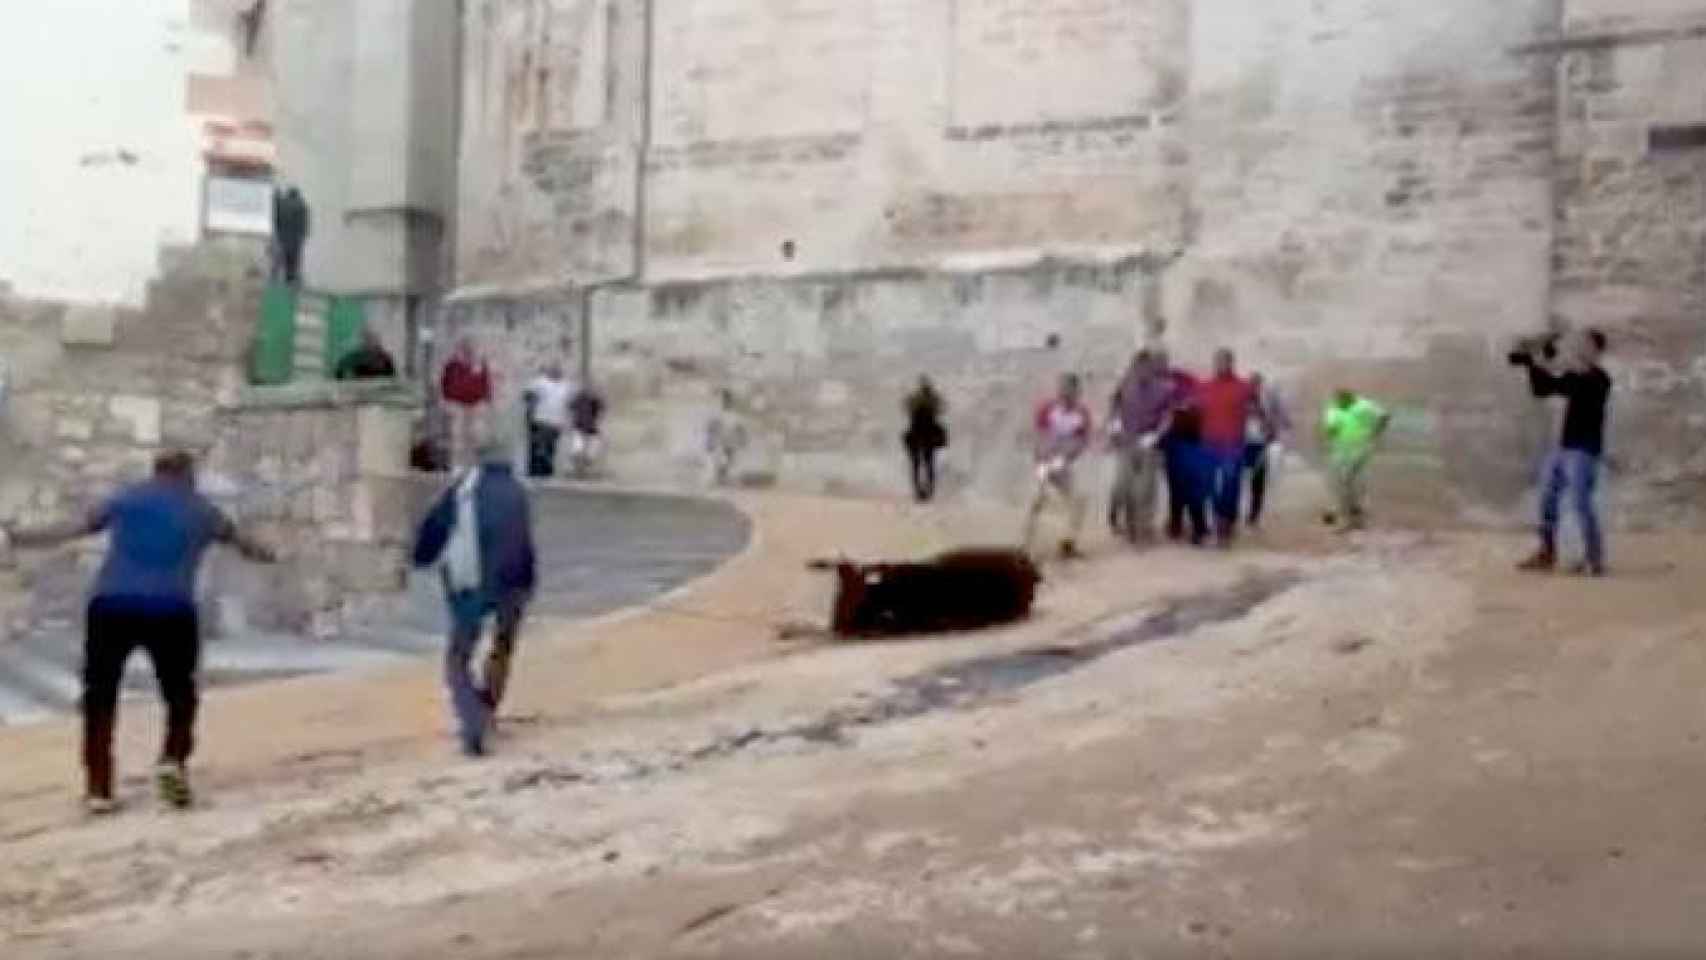 Los participantes en la 'suelta' de Cuenca arrastran a la vaquilla por las calles del centro histórico entre los lloros del animal / CG